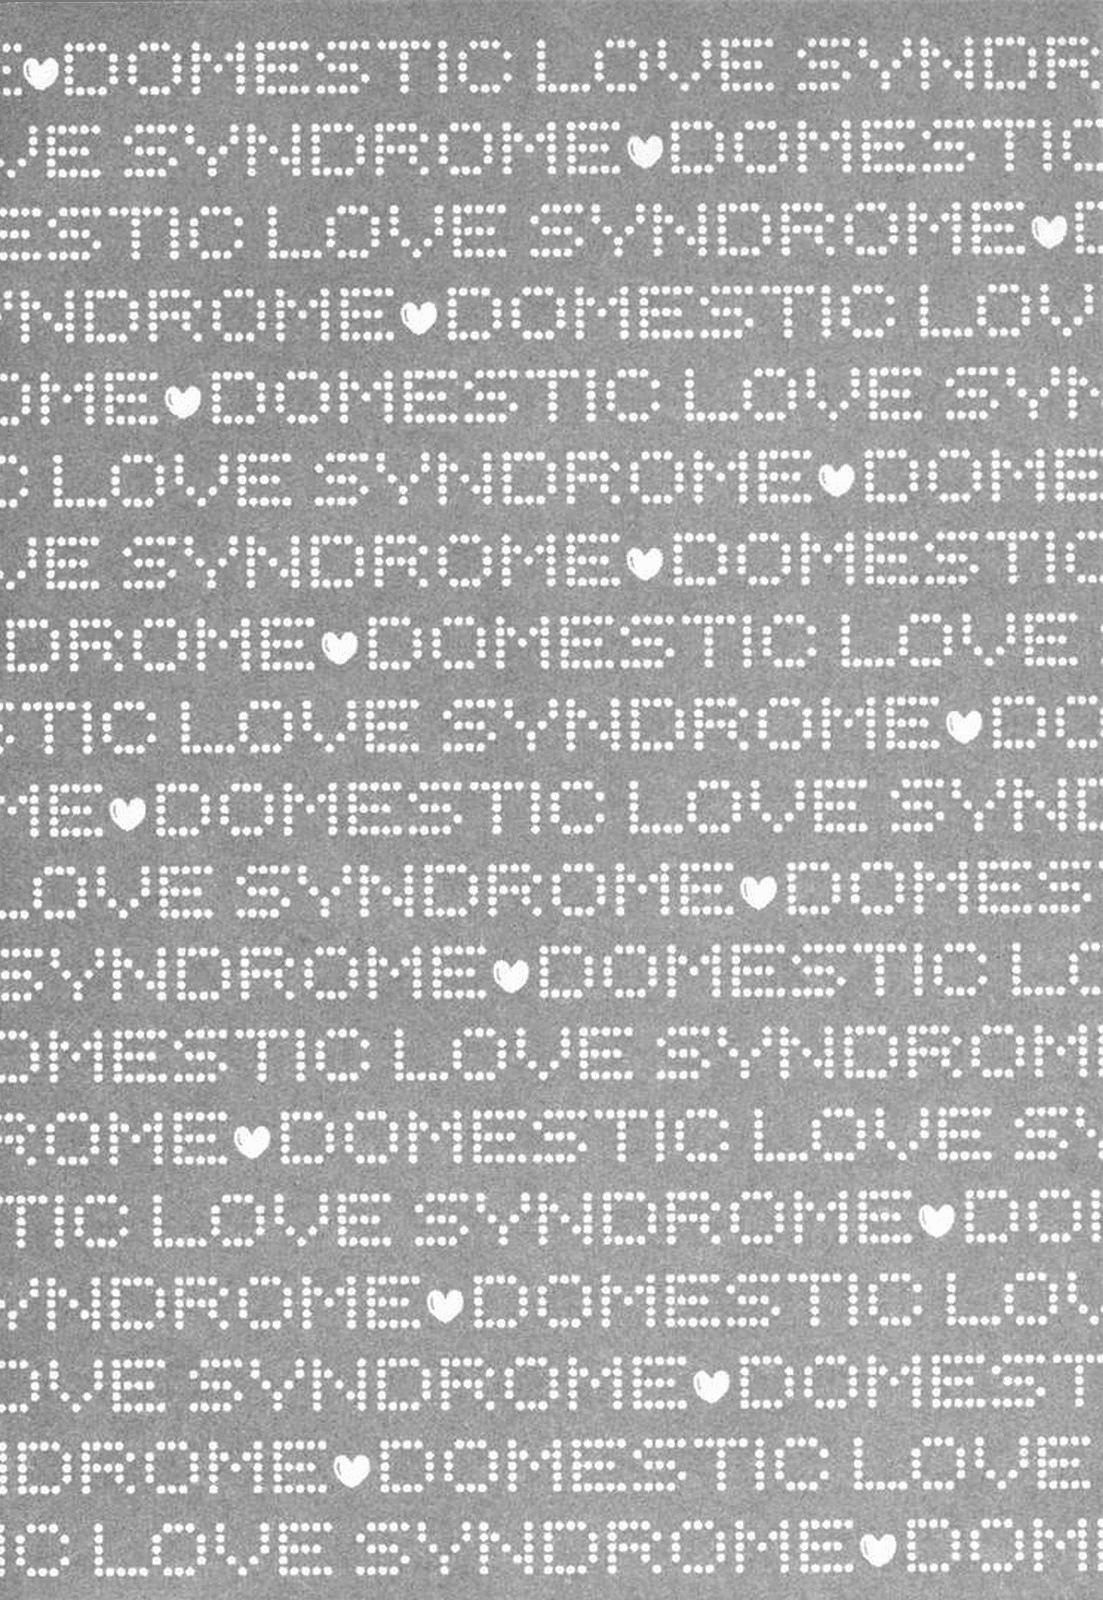 Domestic Love Syndrome / Kateinai Renai Shoukougun Ch.1-2 3